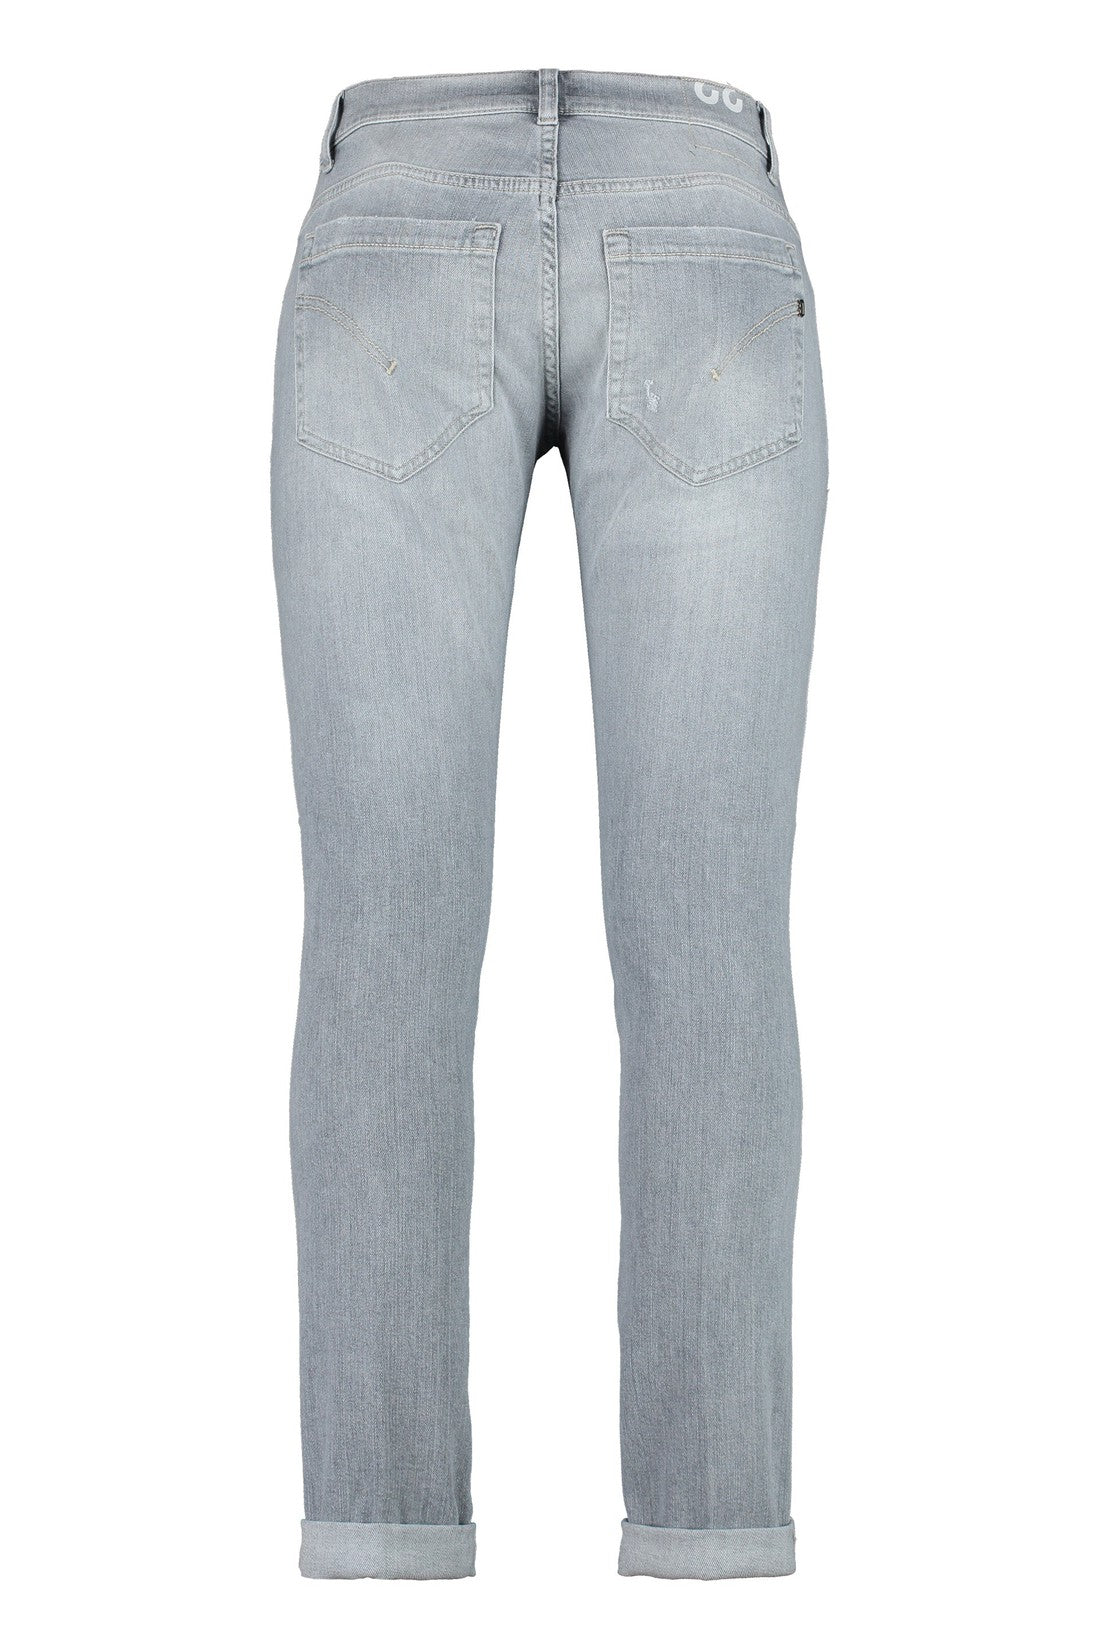 Dondup-OUTLET-SALE-George 5-pocket jeans-ARCHIVIST